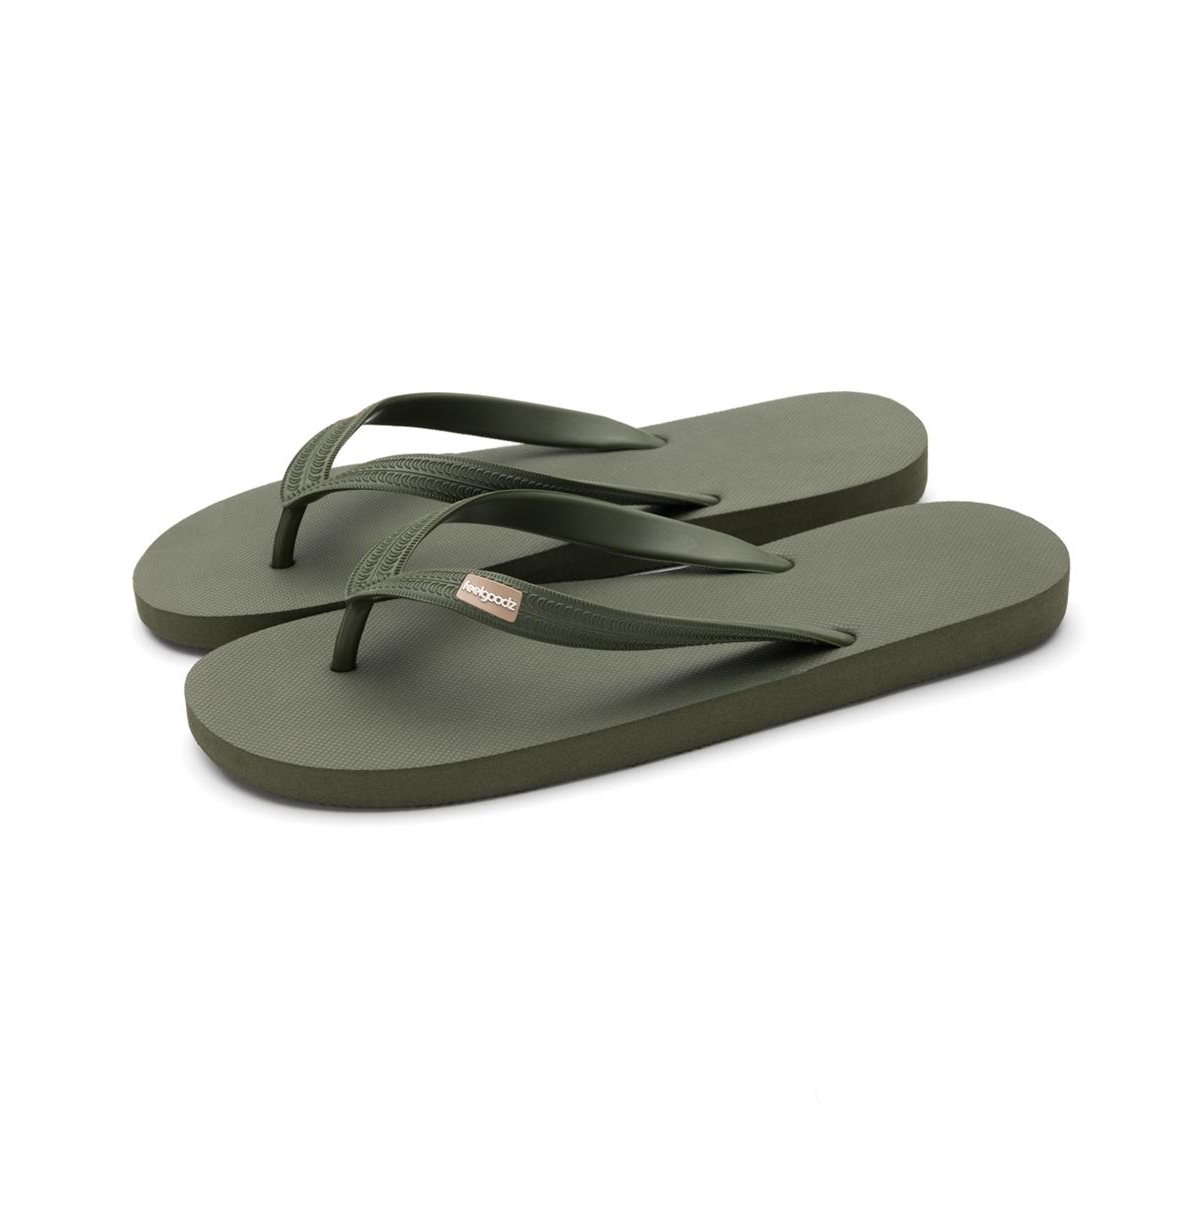 Men's Men S Classicz Core Natural Rubber Flip-flop Thong Sandals - Olive